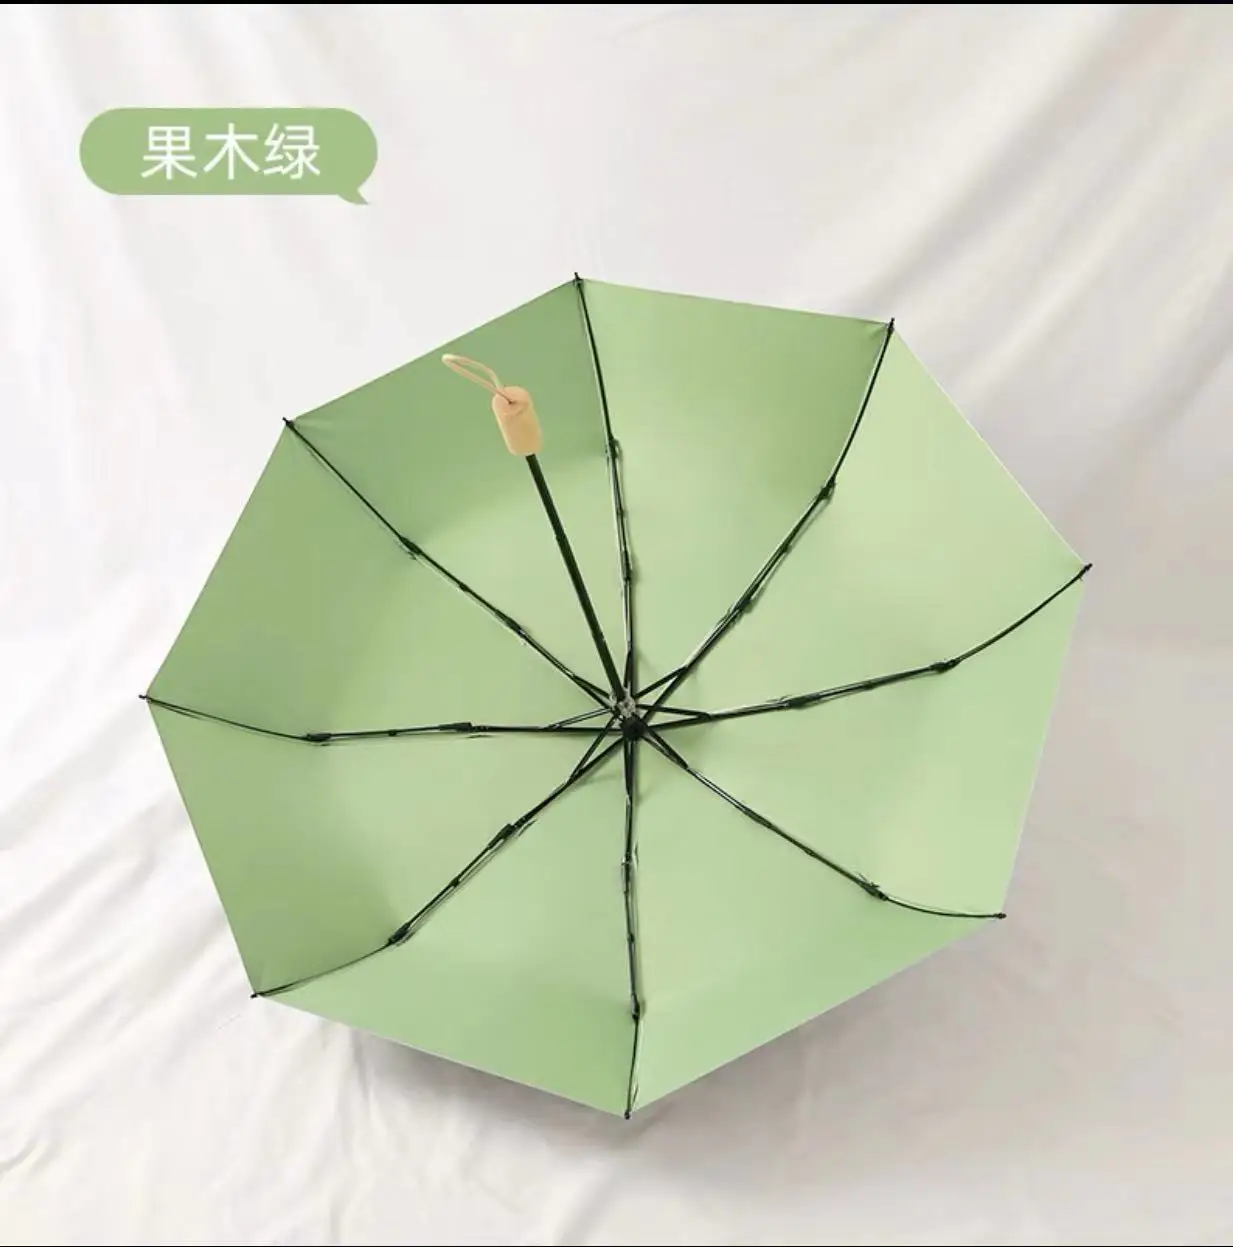 11022円 低廉 Sun Umbrella Female Retro Double-Layer Rain and Dual-use Small Fresh Folding Umbrellas